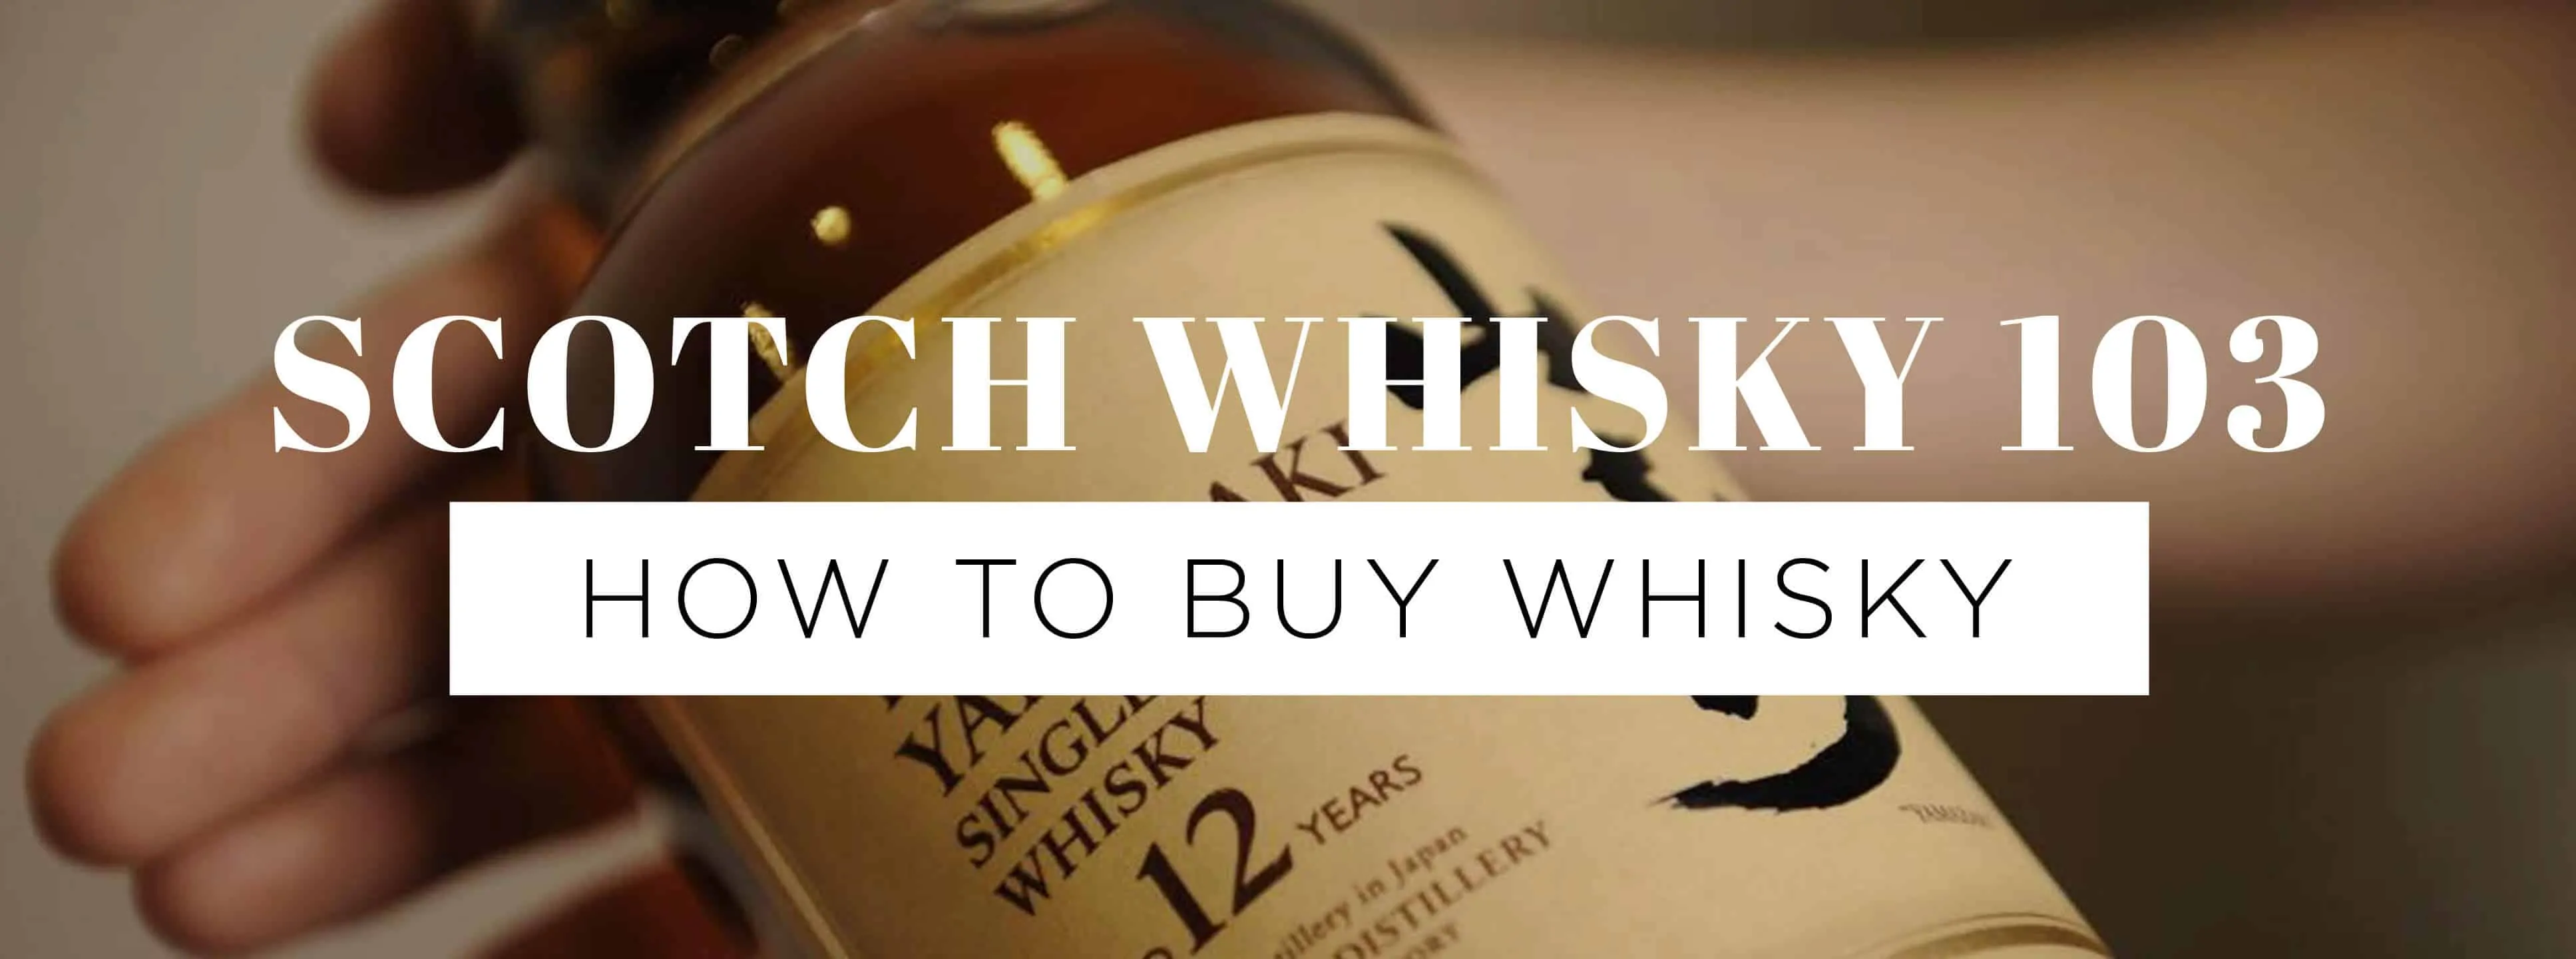 Scotch Whisky 103